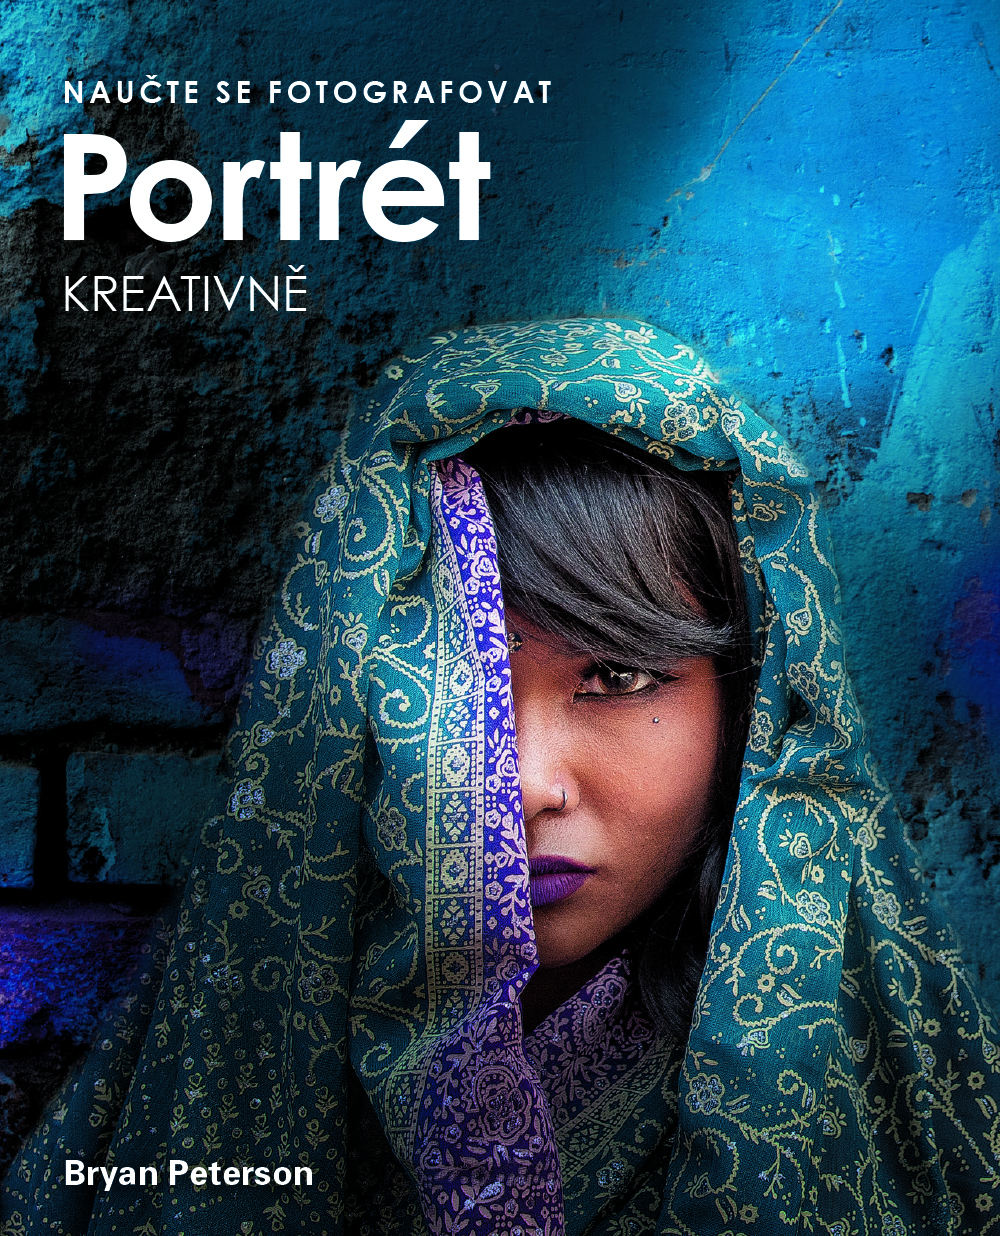 Naučte se fotografovat portrét kreativně - Jak na skvělé fotografie lidí